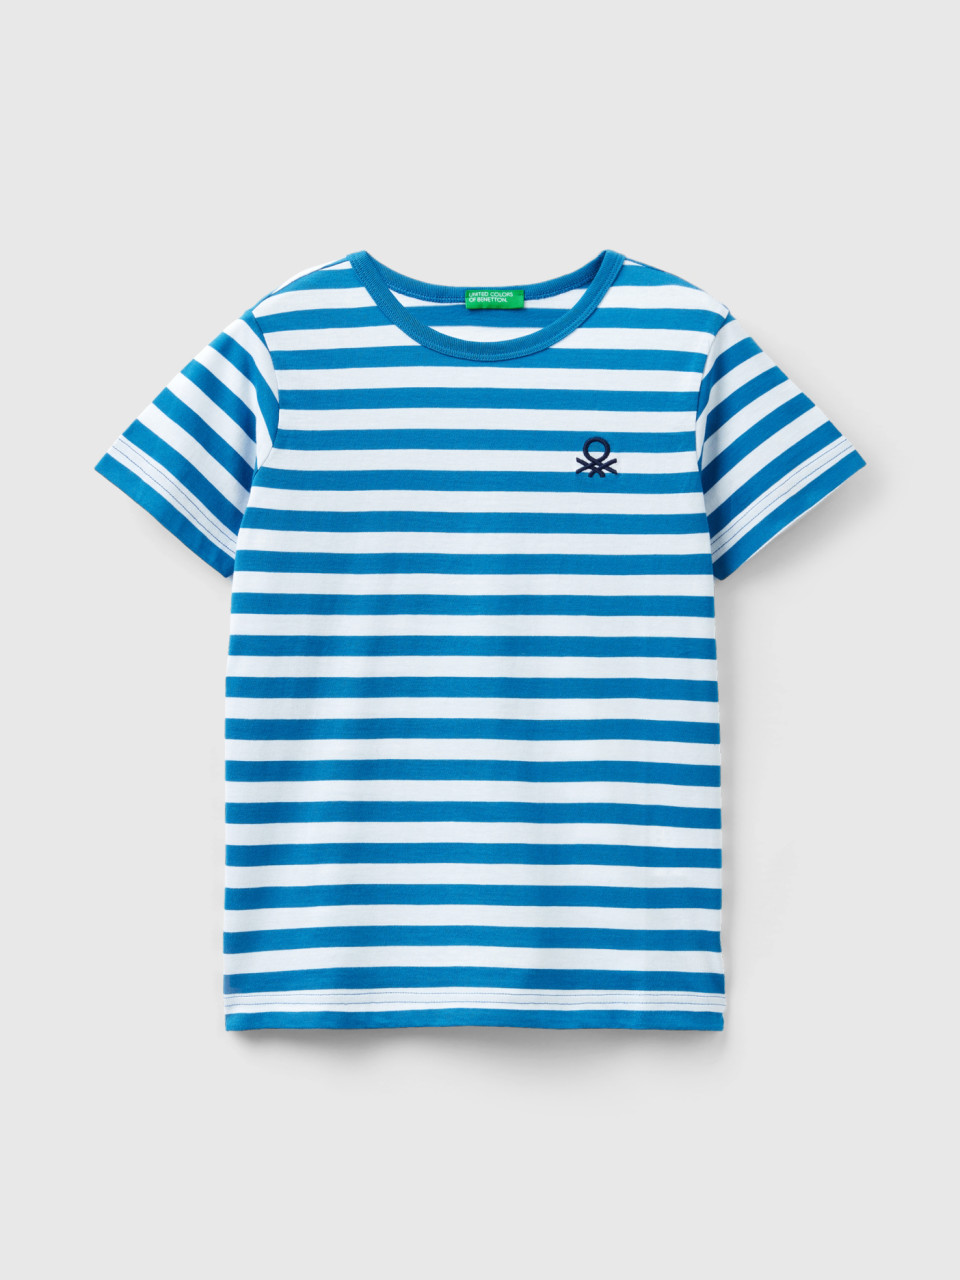 Benetton, Striped 100% Cotton T-shirt, Light Blue, Kids